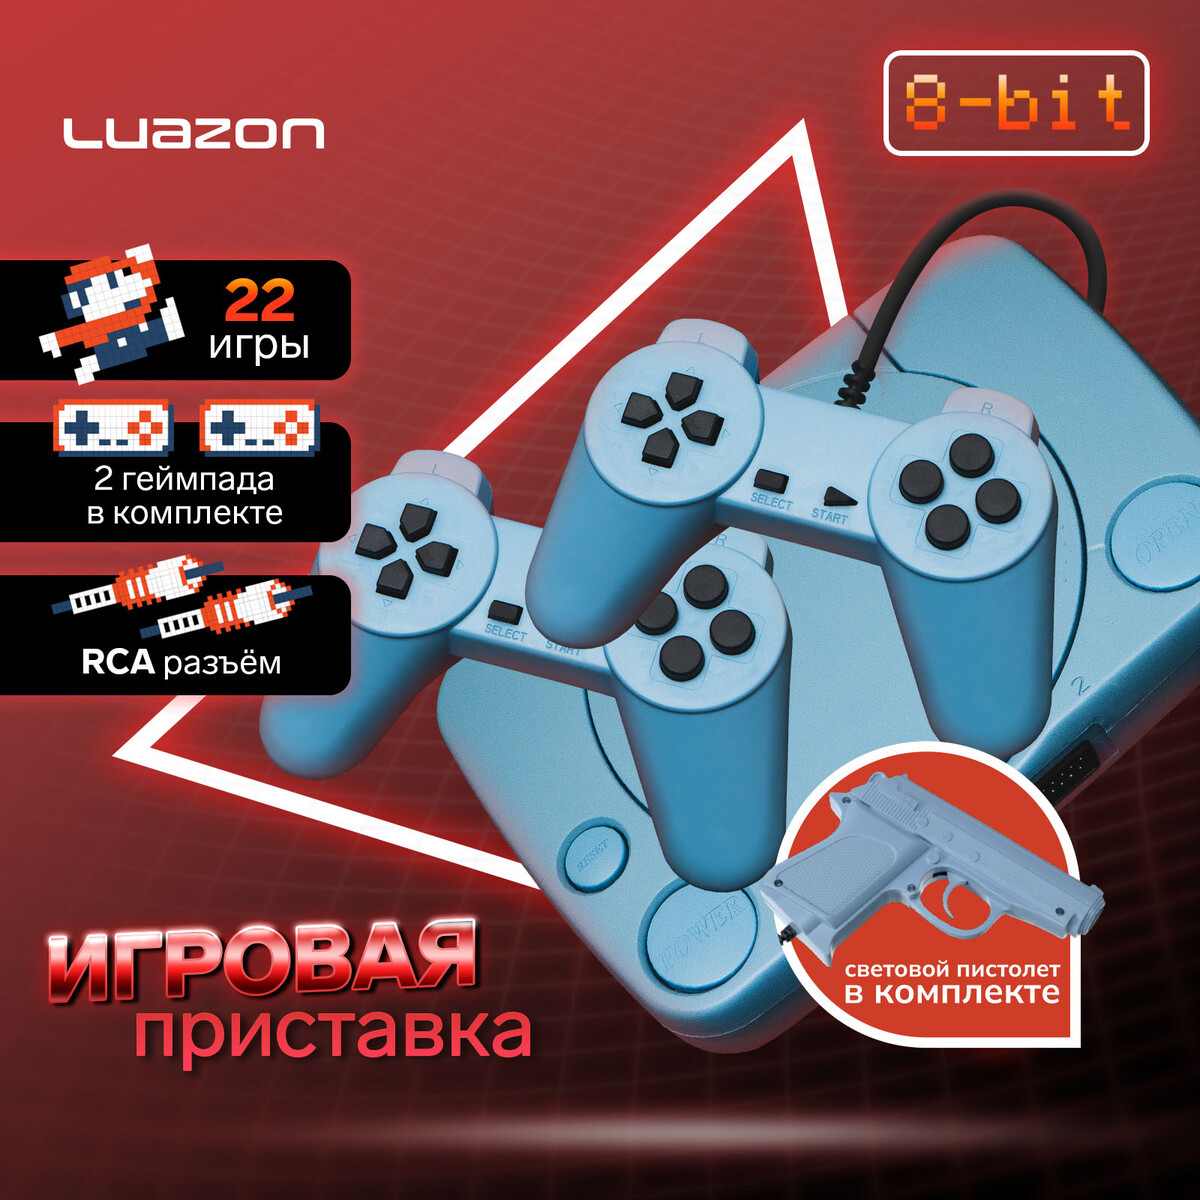 Игровая приставка luazon game-1, 8 бит, в комплекте 2 джойстика и пистолет, 22 игры, серая